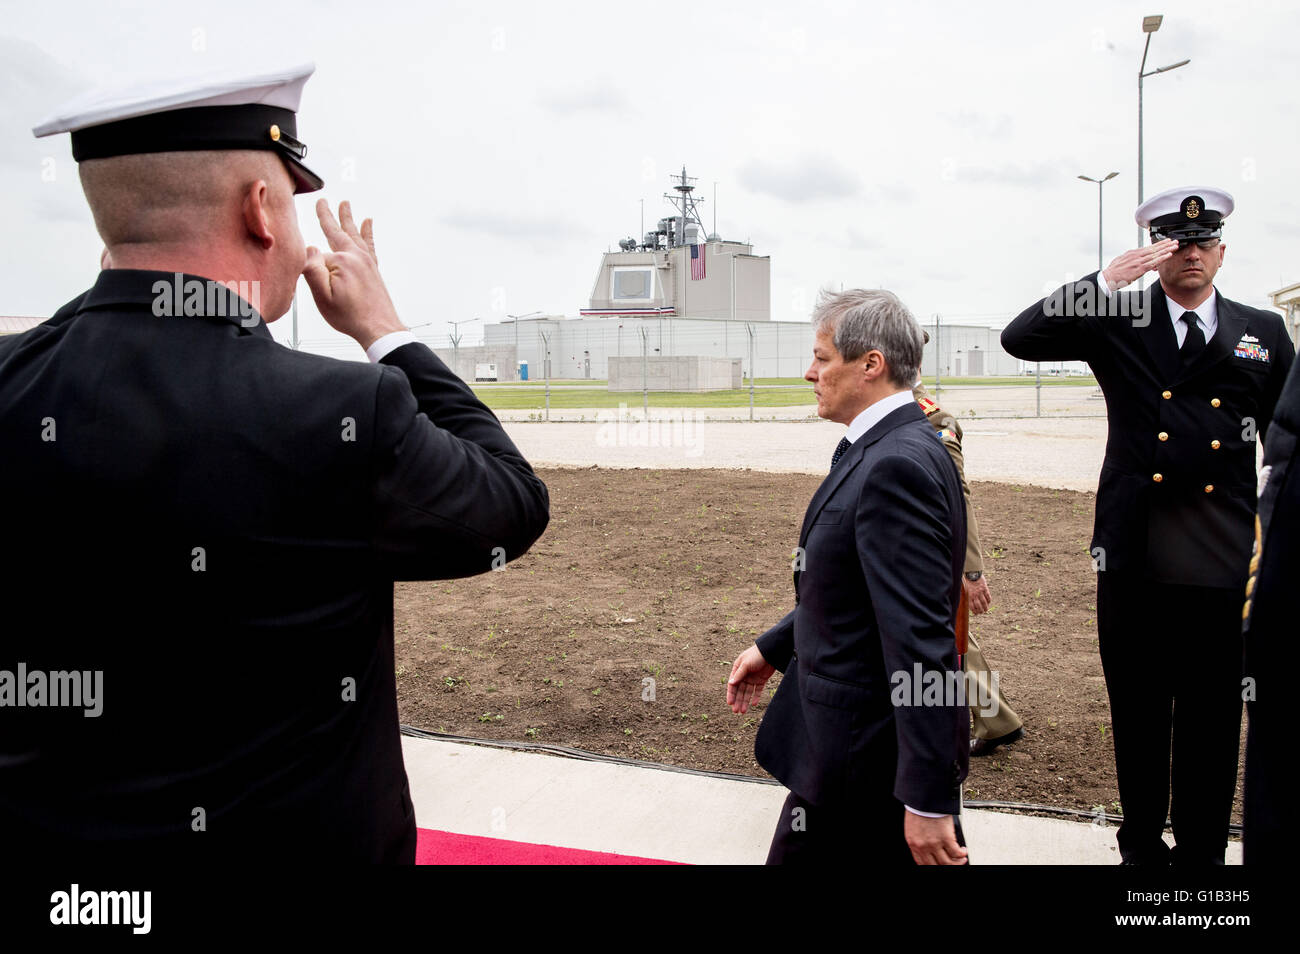 Deveselu, Roumanie. 12 mai, 2016. Le Premier ministre roumain Dacian Ciolos assiste à la cérémonie d'inauguration officielle de la première base pour faire partie de la protection antimissile de l'OTAN à Deveselu, Roumanie, 12 mai 2016. De hauts fonctionnaires roumains et des représentants du ministère de la défense et de l'État, l'US Navy le siège européen de l'OTAN et les décideurs ont assisté à la cérémonie d'inauguration officielle de l'armée de défense antimissile mondial tenue le même jour. Photo : KAY NIETFELD/dpa/Alamy Live News Banque D'Images